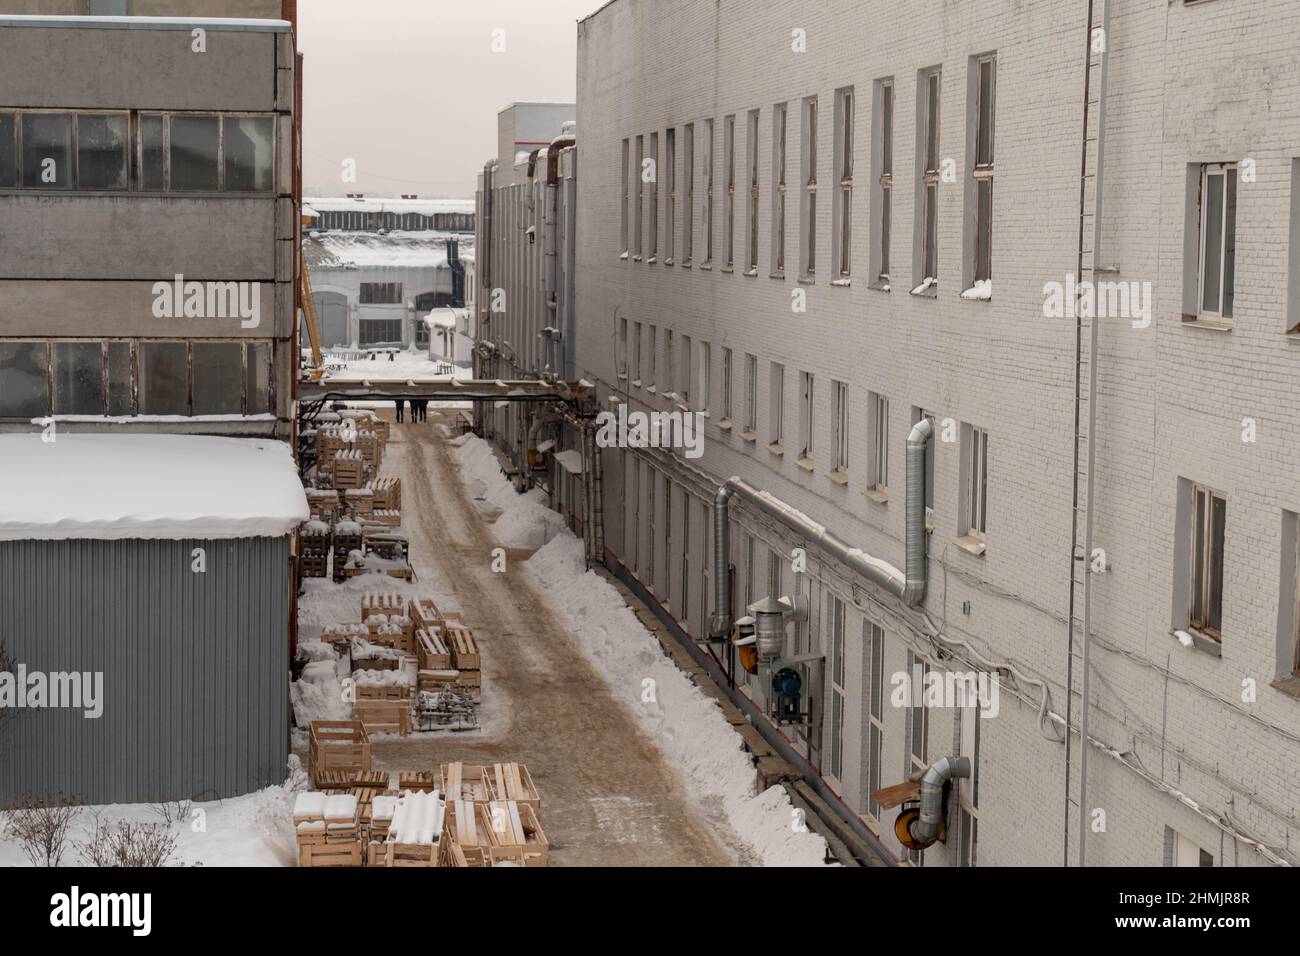 Road between buildings in winter 2022 Stock Photo